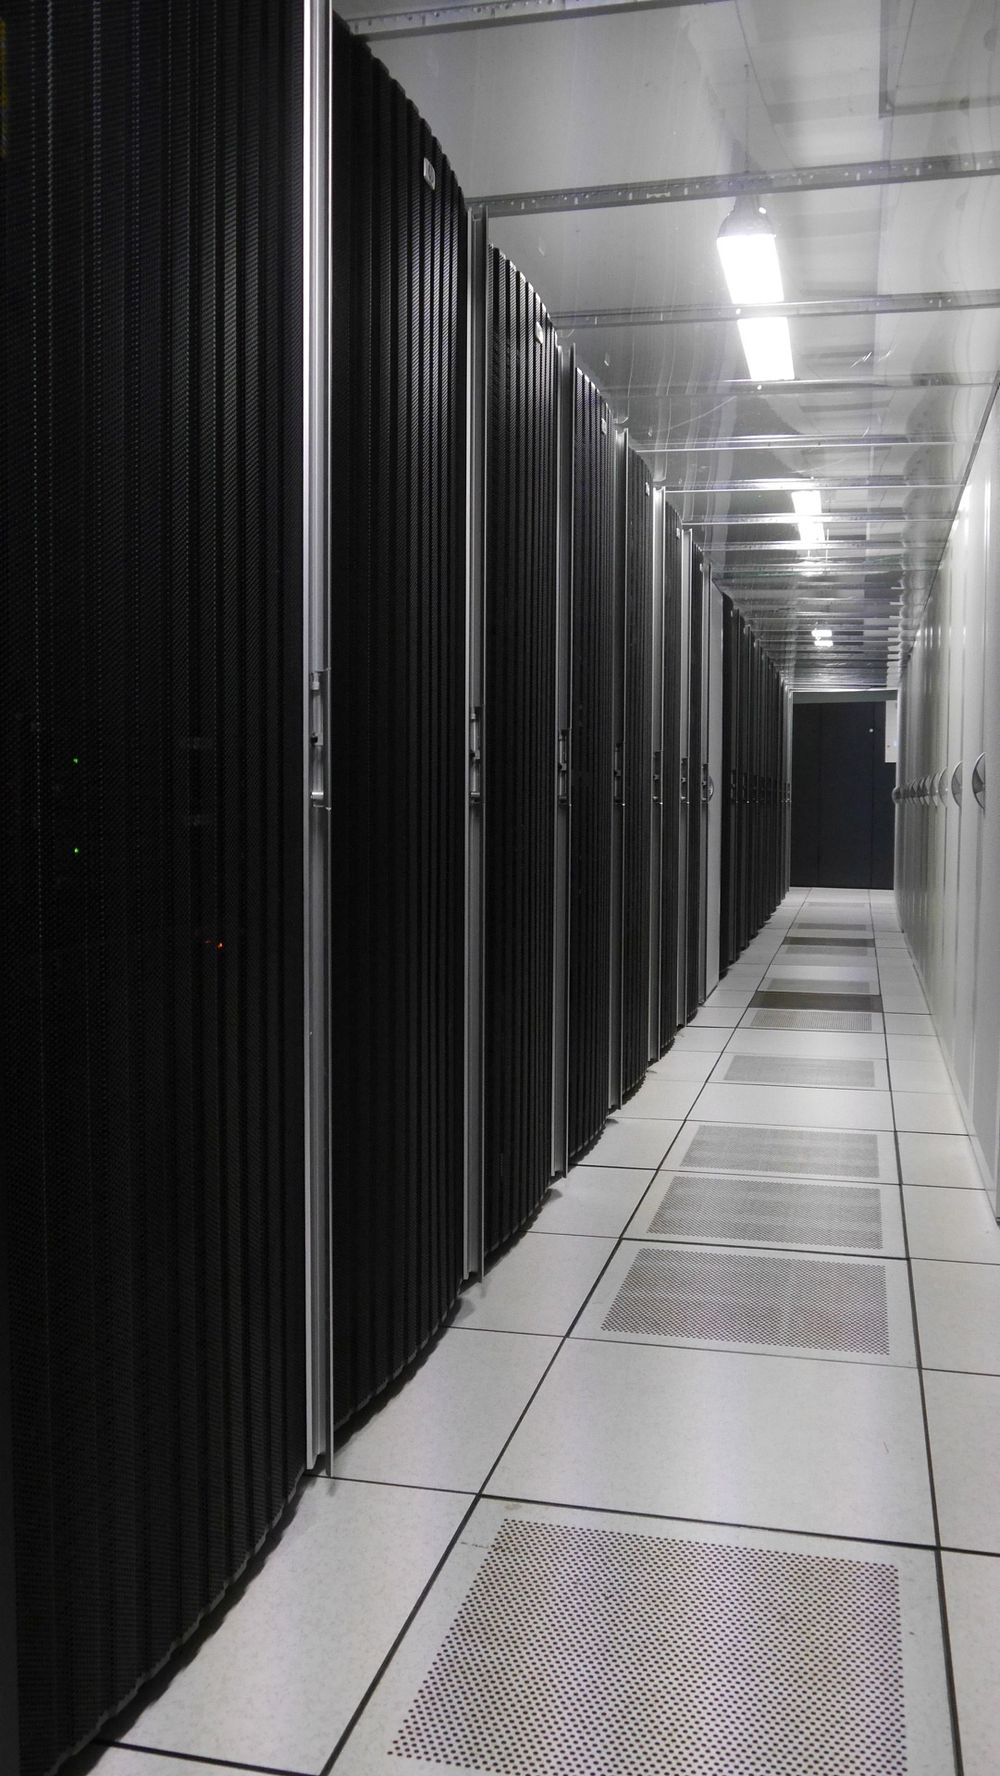 Fra datahaller som dette leverer Evry både offenlige og private nettsky-tjenester. Bilder er fra kald sone mellom to rack-rekker.